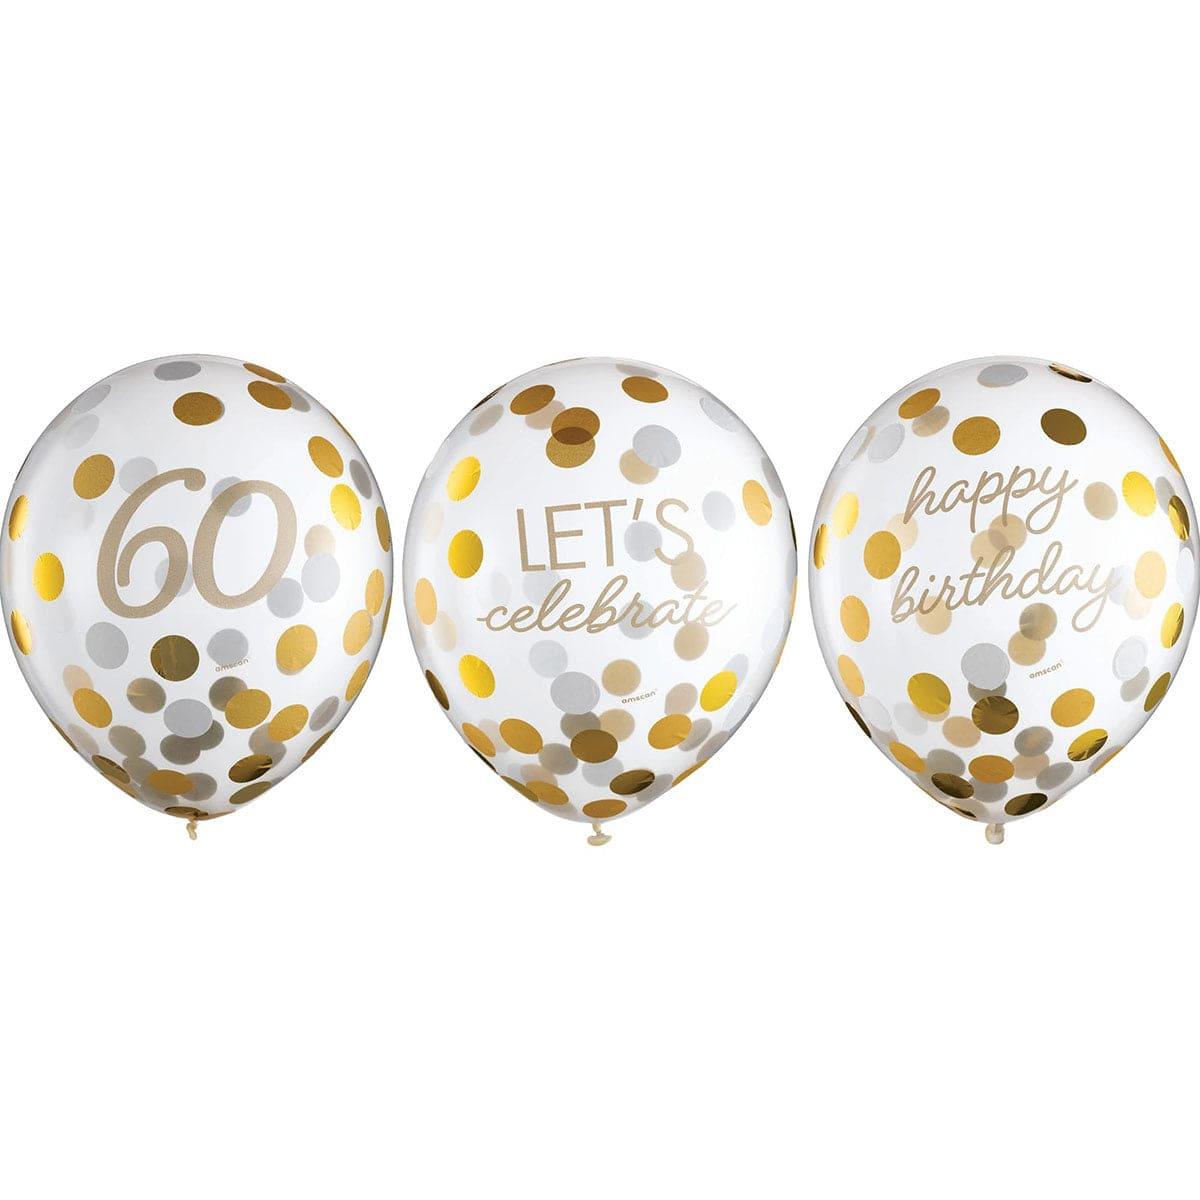 Décoration de salle anniversaire, ballons latex 60 ans blanc et or